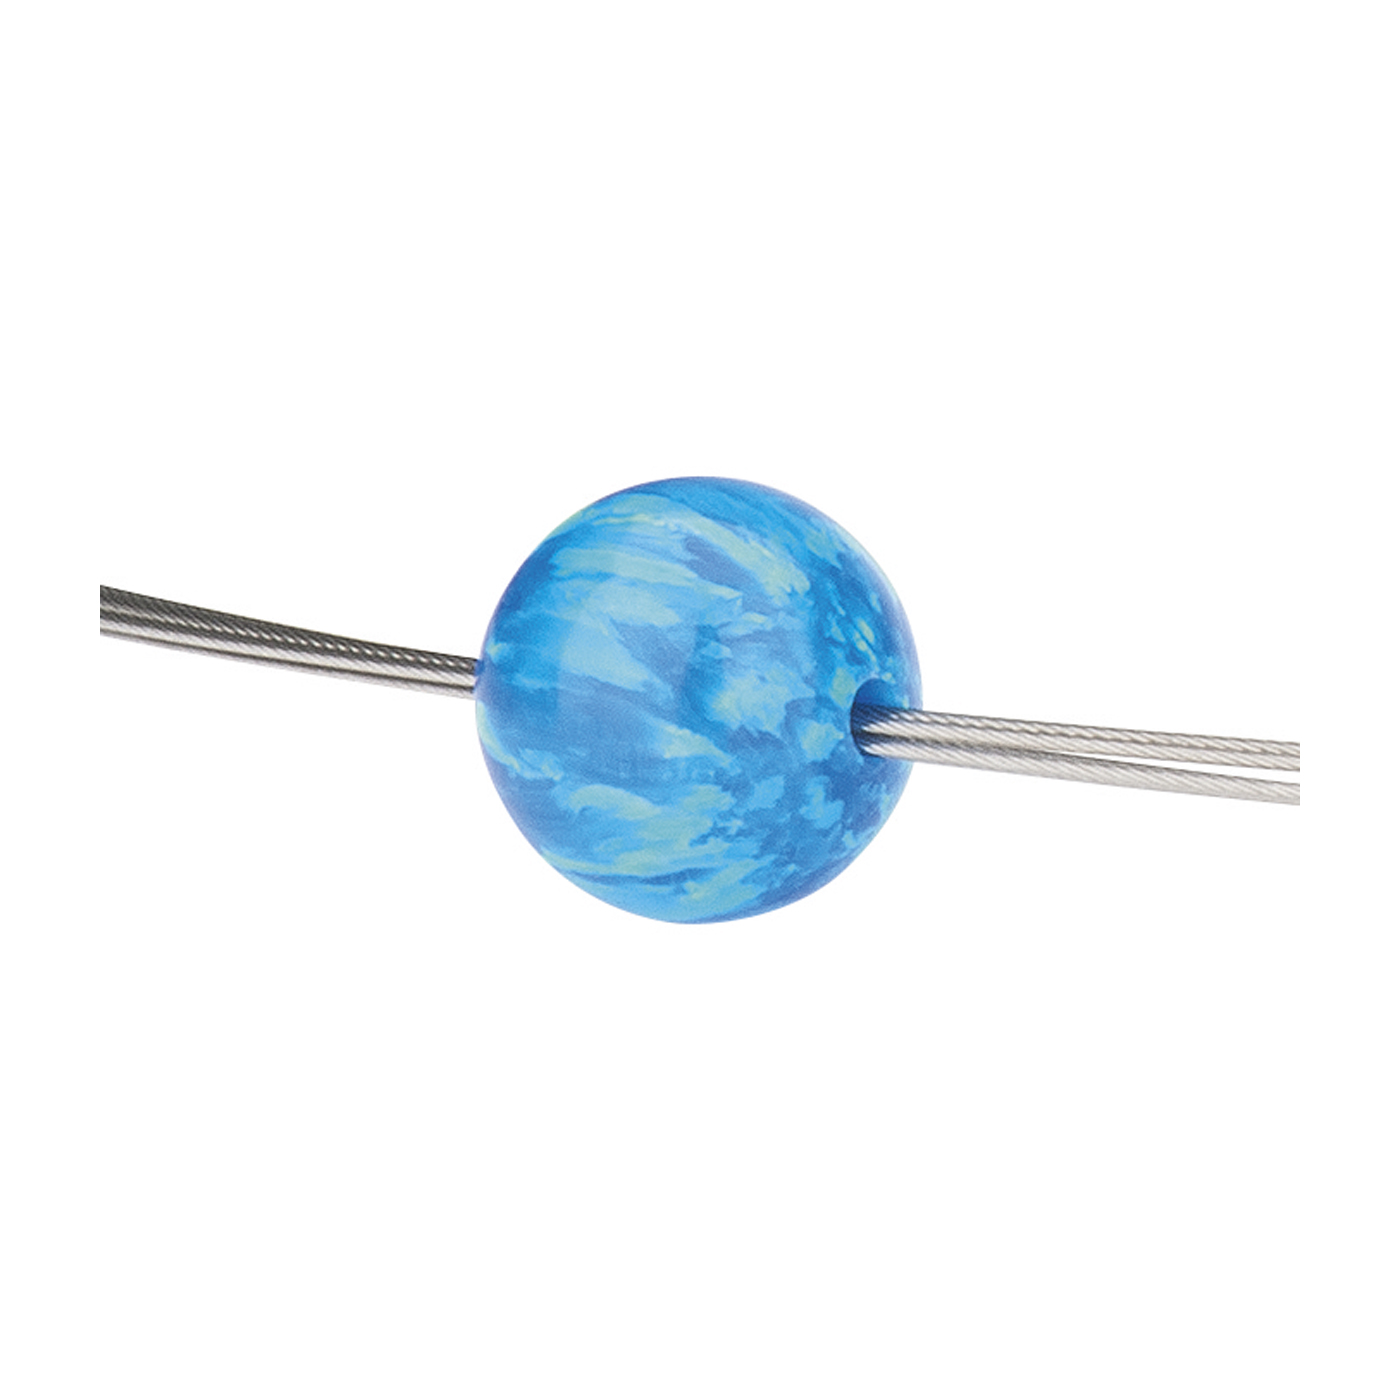 Opal Imitation Ball, Blue, ø 8 mm, Drilled Through - 1 piece